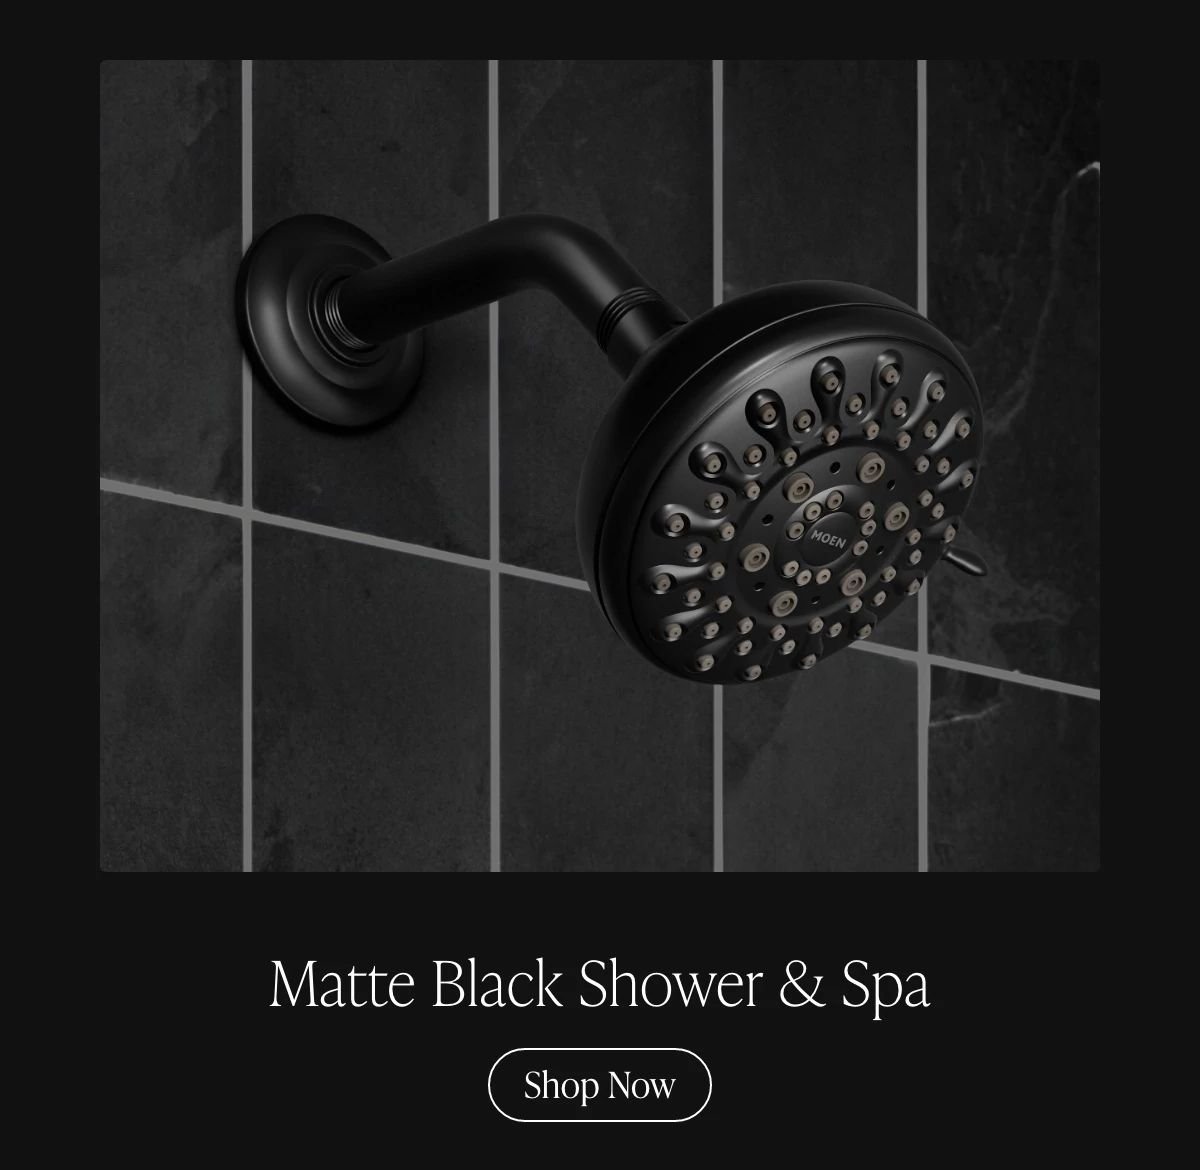 Matte Black Shower & Spa